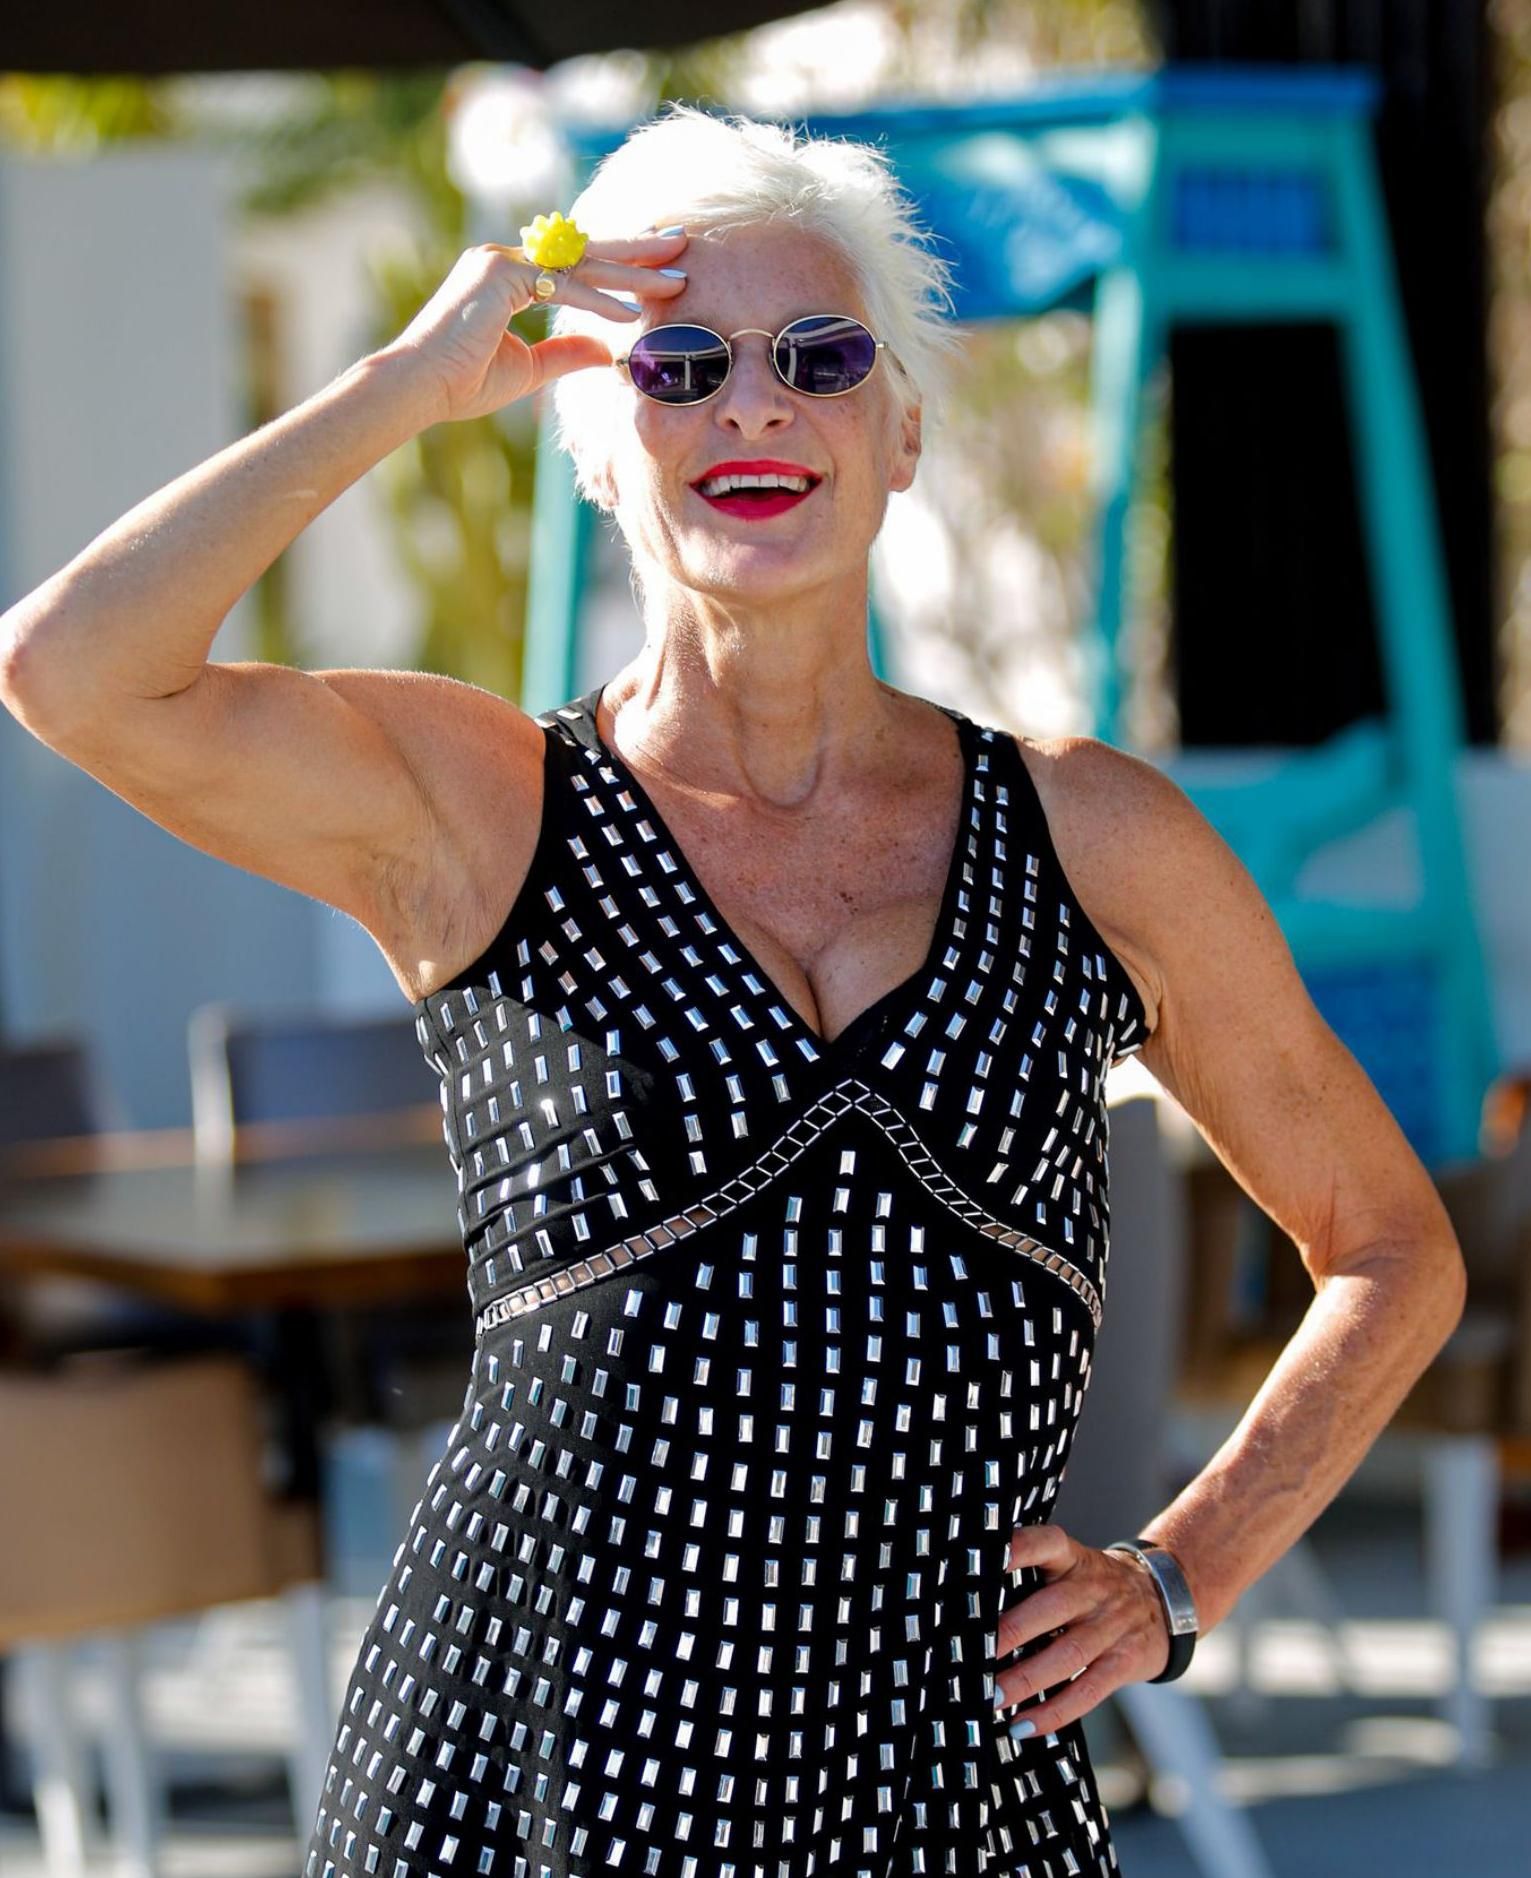 La artista plástica y fotógrafa británica Alison Jackson posa durante su estancia en Ibiza.